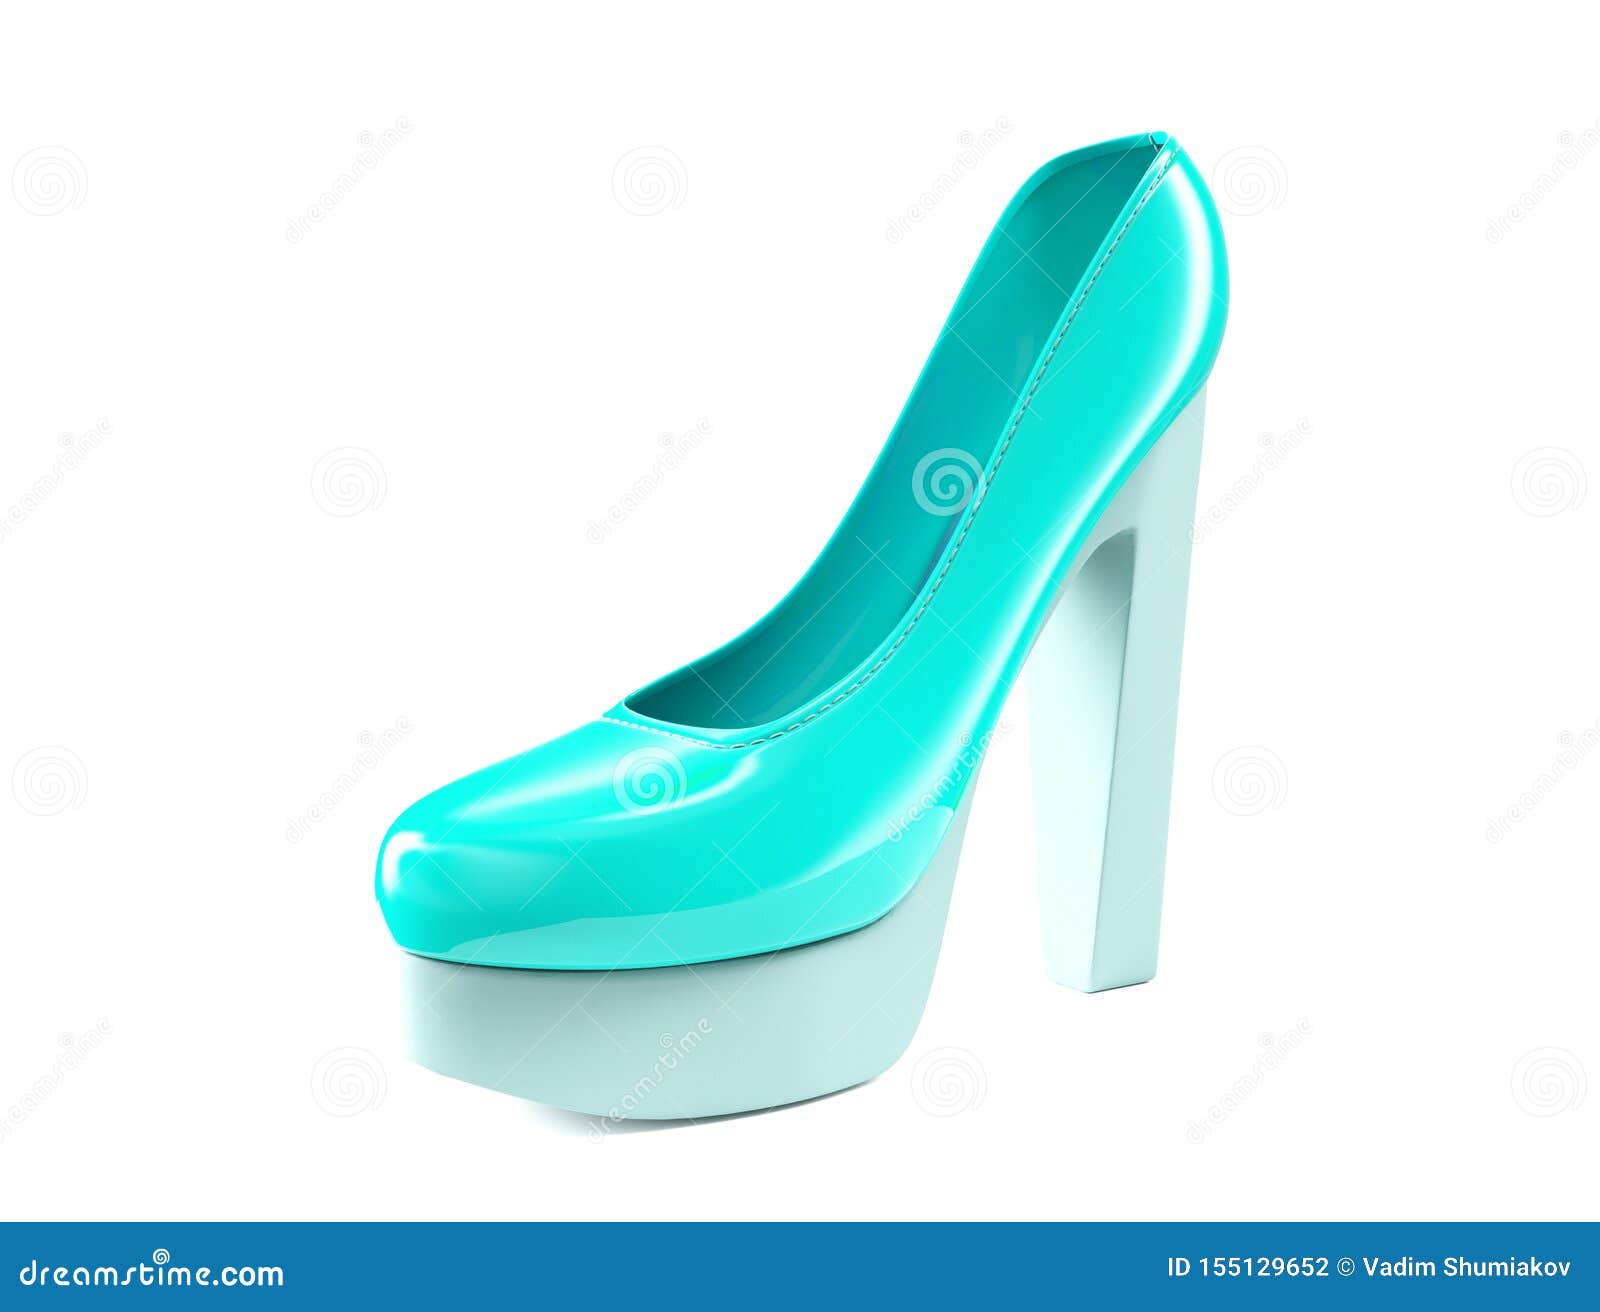 Mackin J Clear Blue High Heel Stiletto Shoes Women's Size 7.5 | eBay